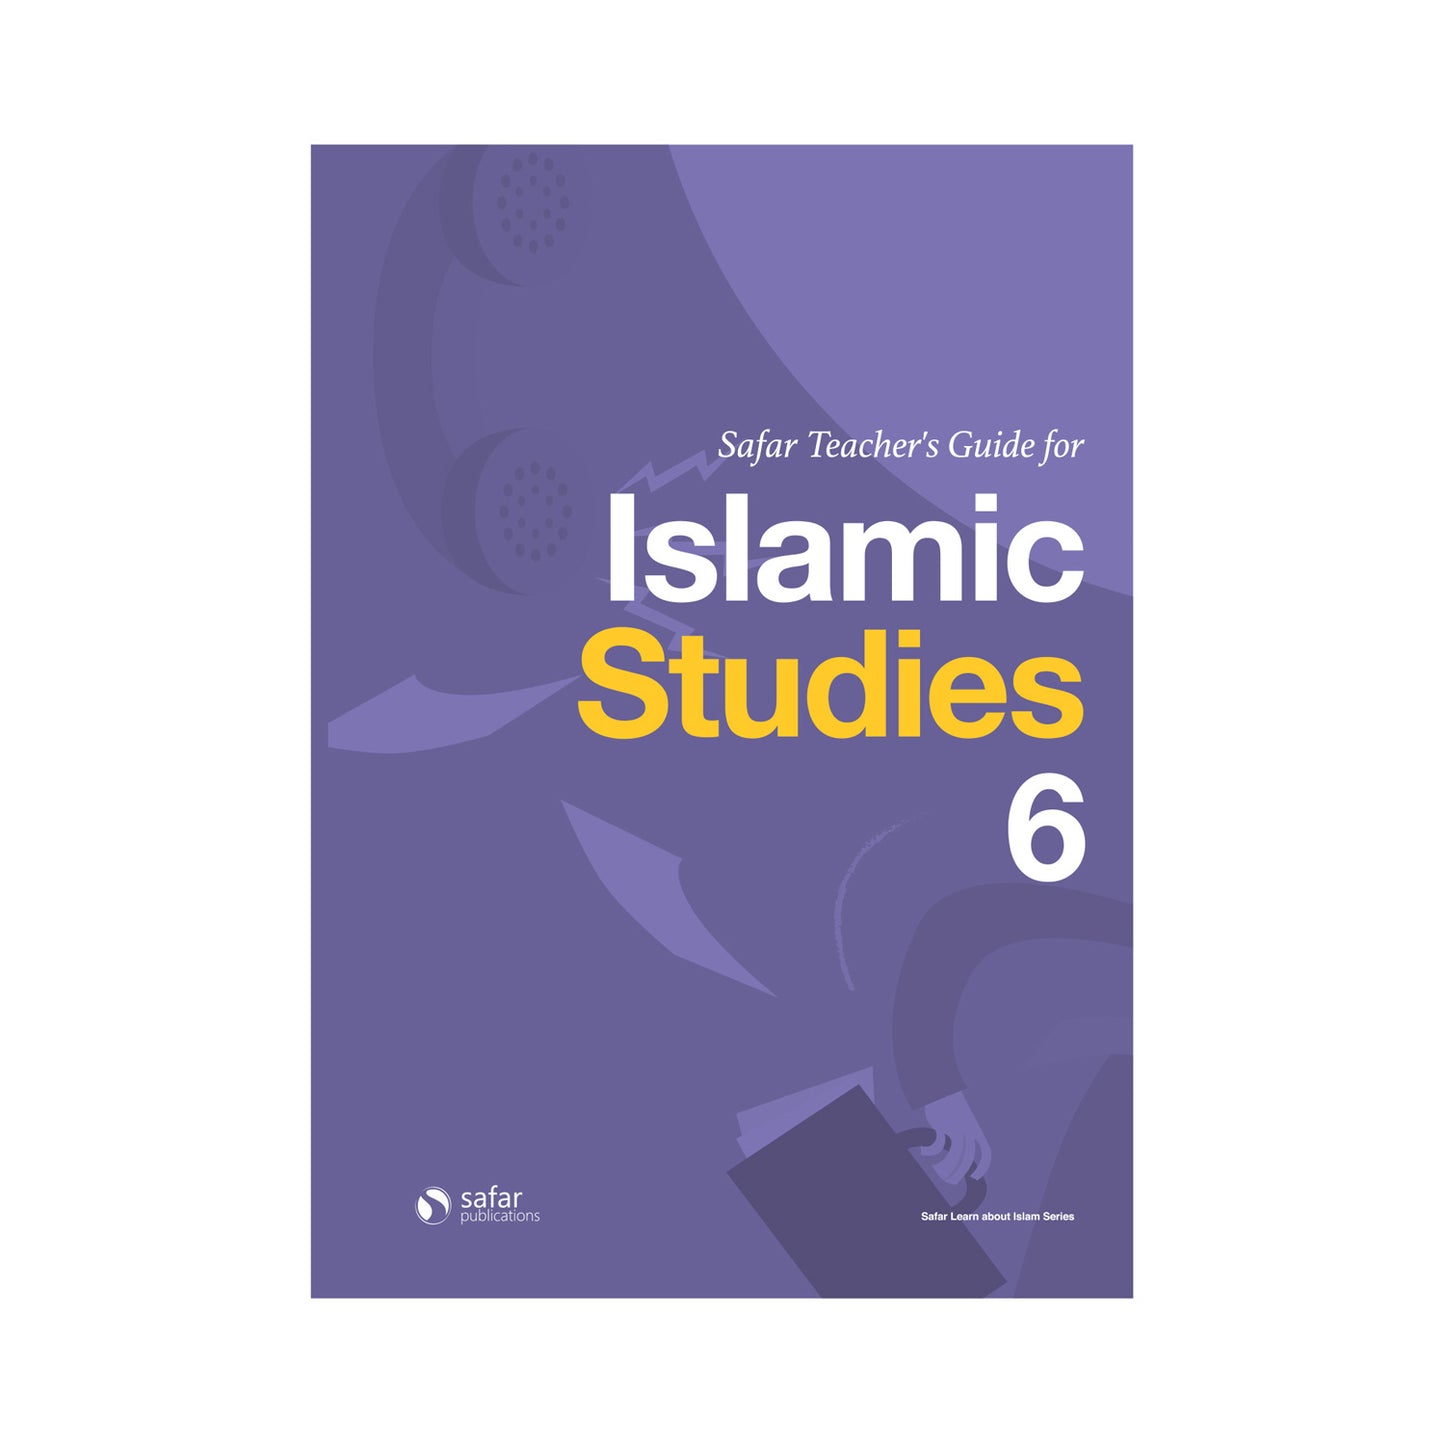 Safar Teacher’s Guide for Islamic Studies – Book 6